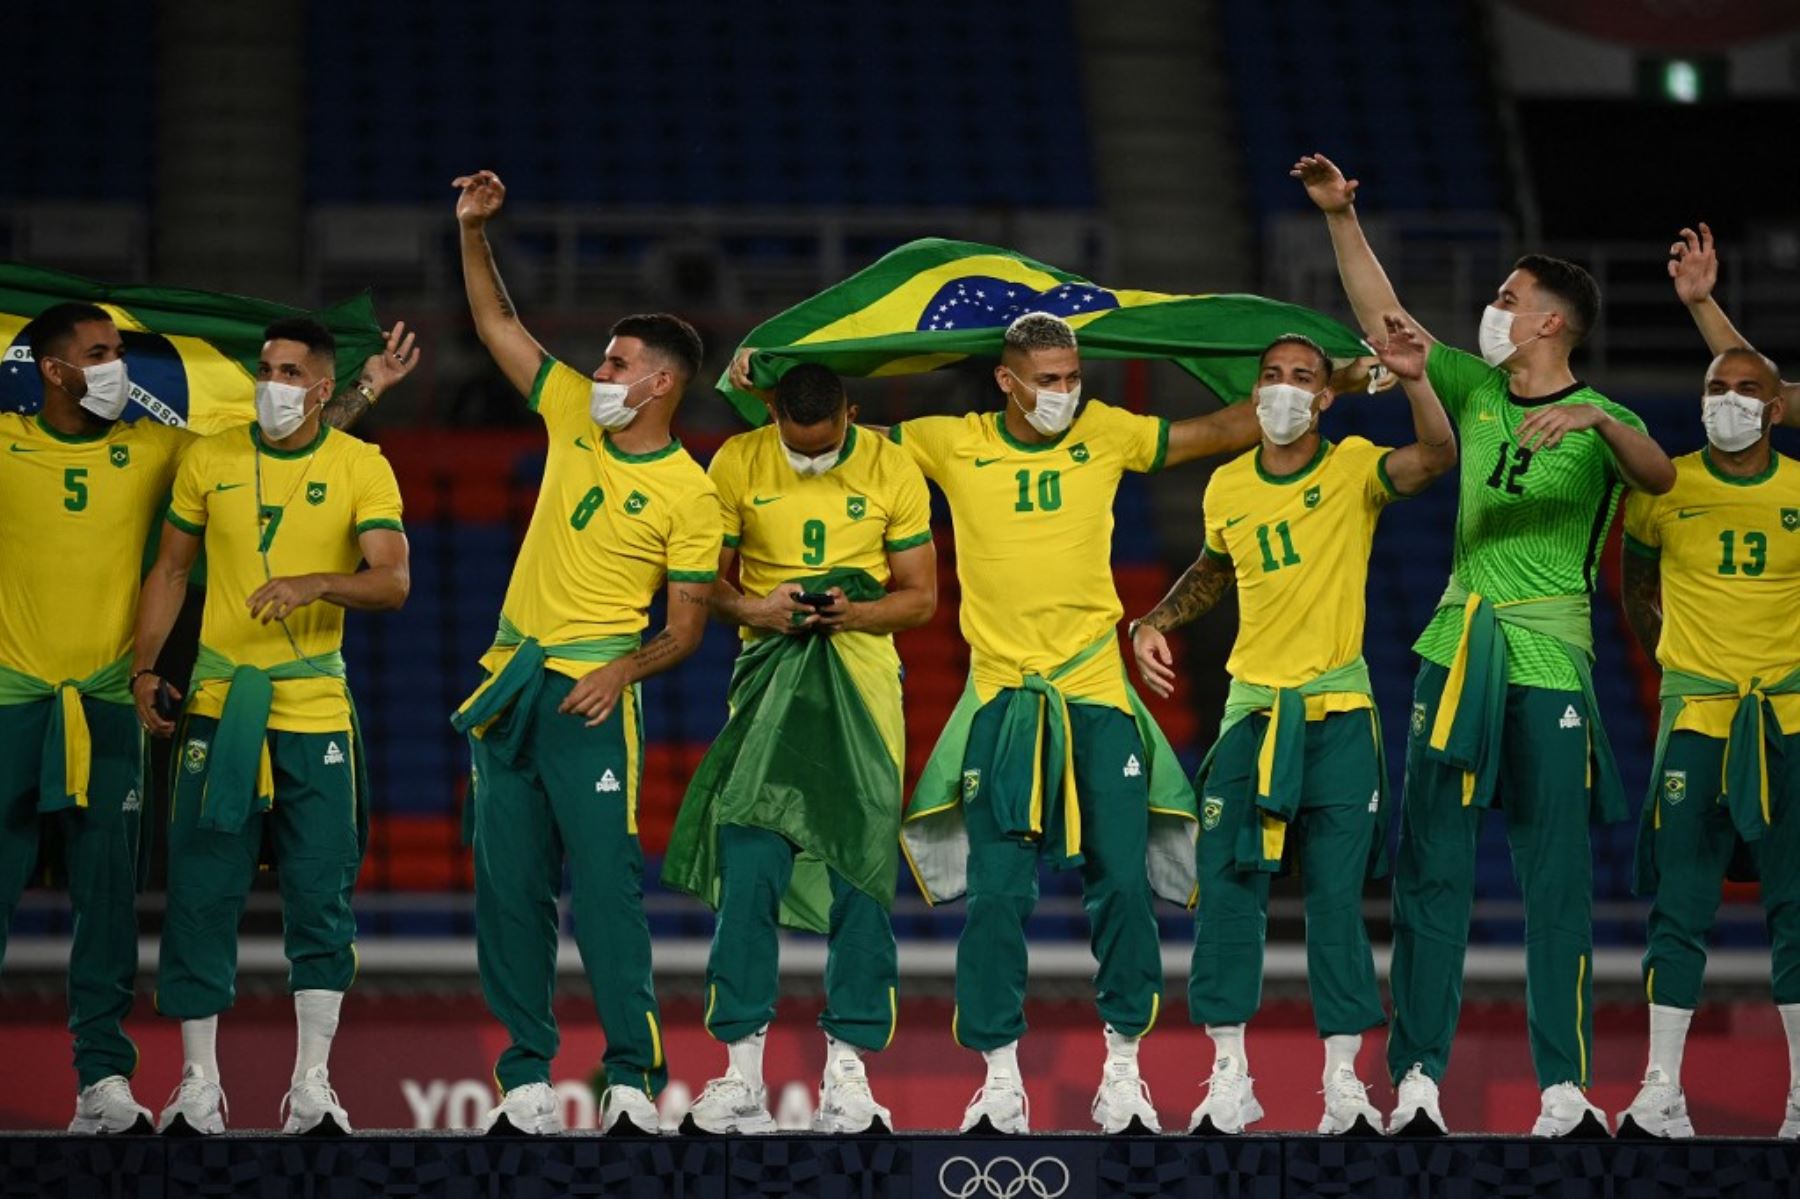 El equipo brasileño de fútbol es duramente criticado por no vestir la indumentaria oficial